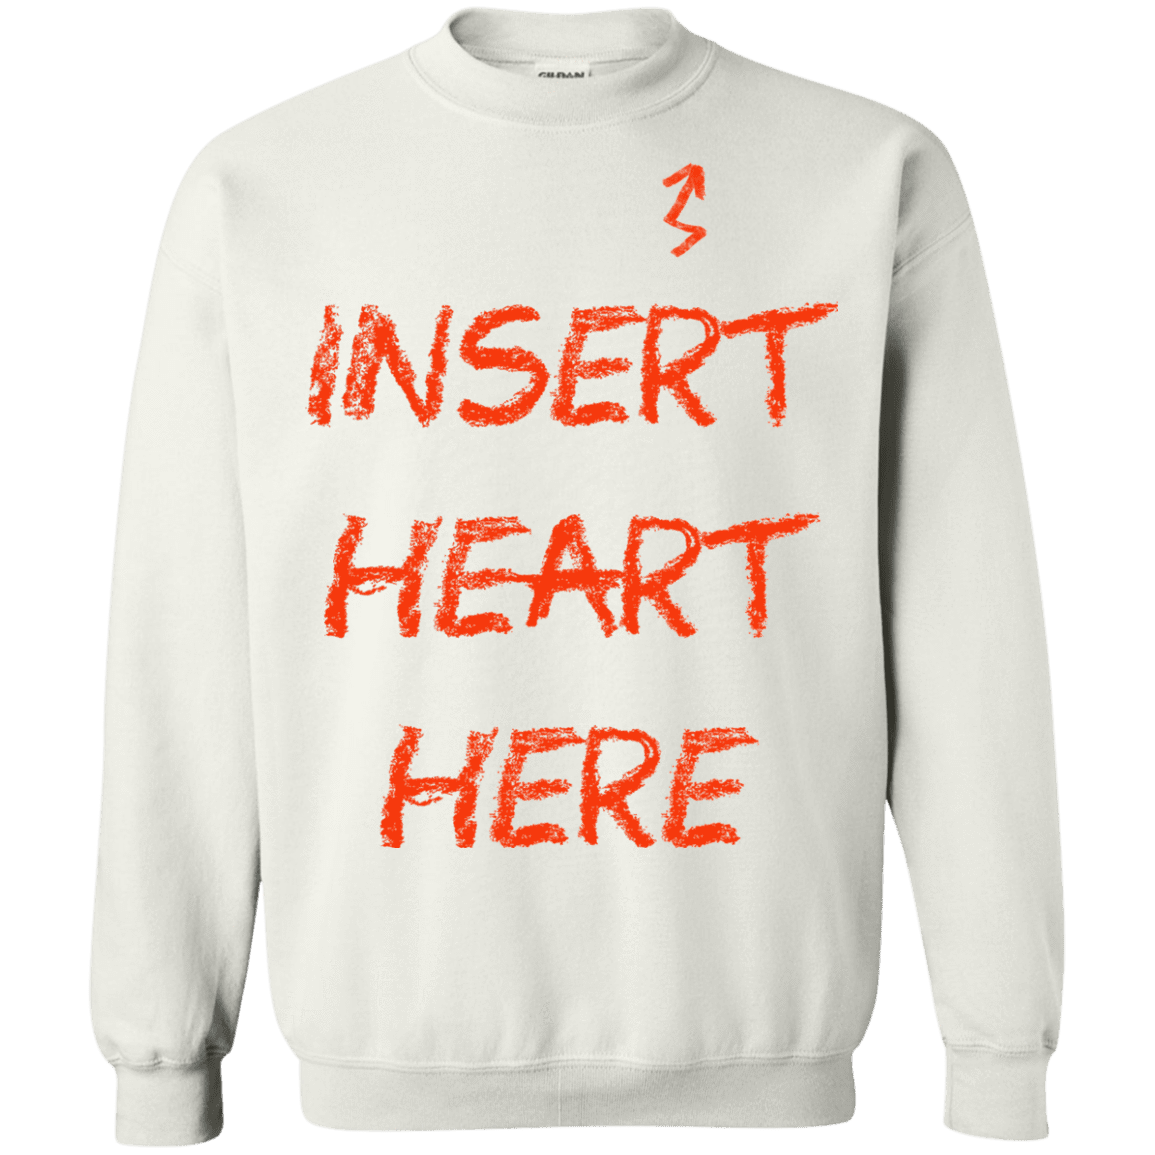 Sweatshirts White / S Insert Heart Here Crewneck Sweatshirt